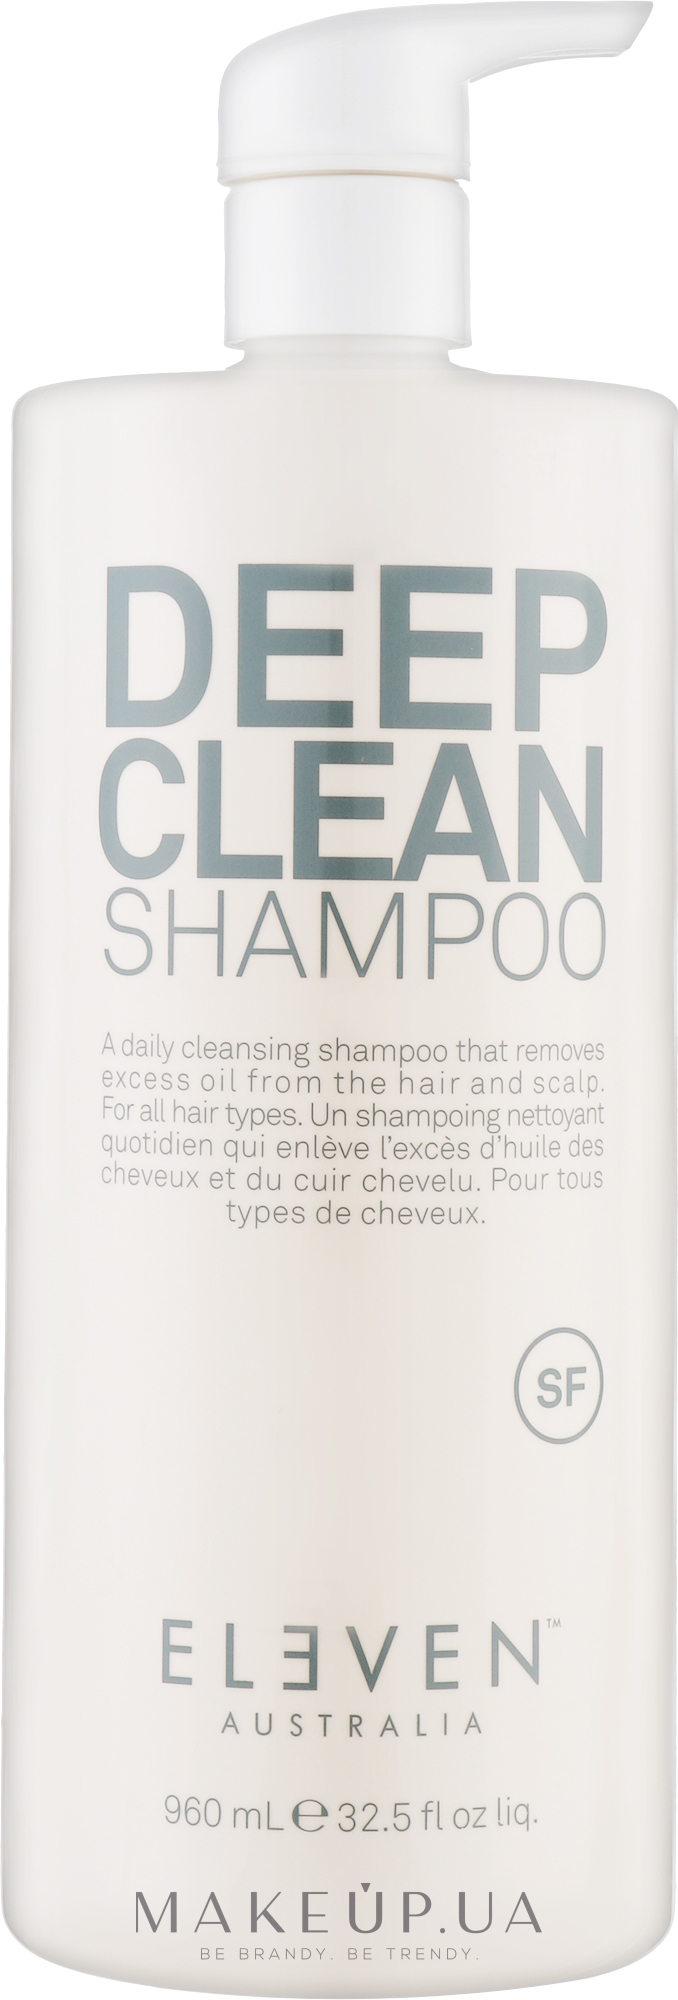 Шампунь для глубокого очищения волос - Eleven Australia Deep Clean Shampoo  — фото 960ml